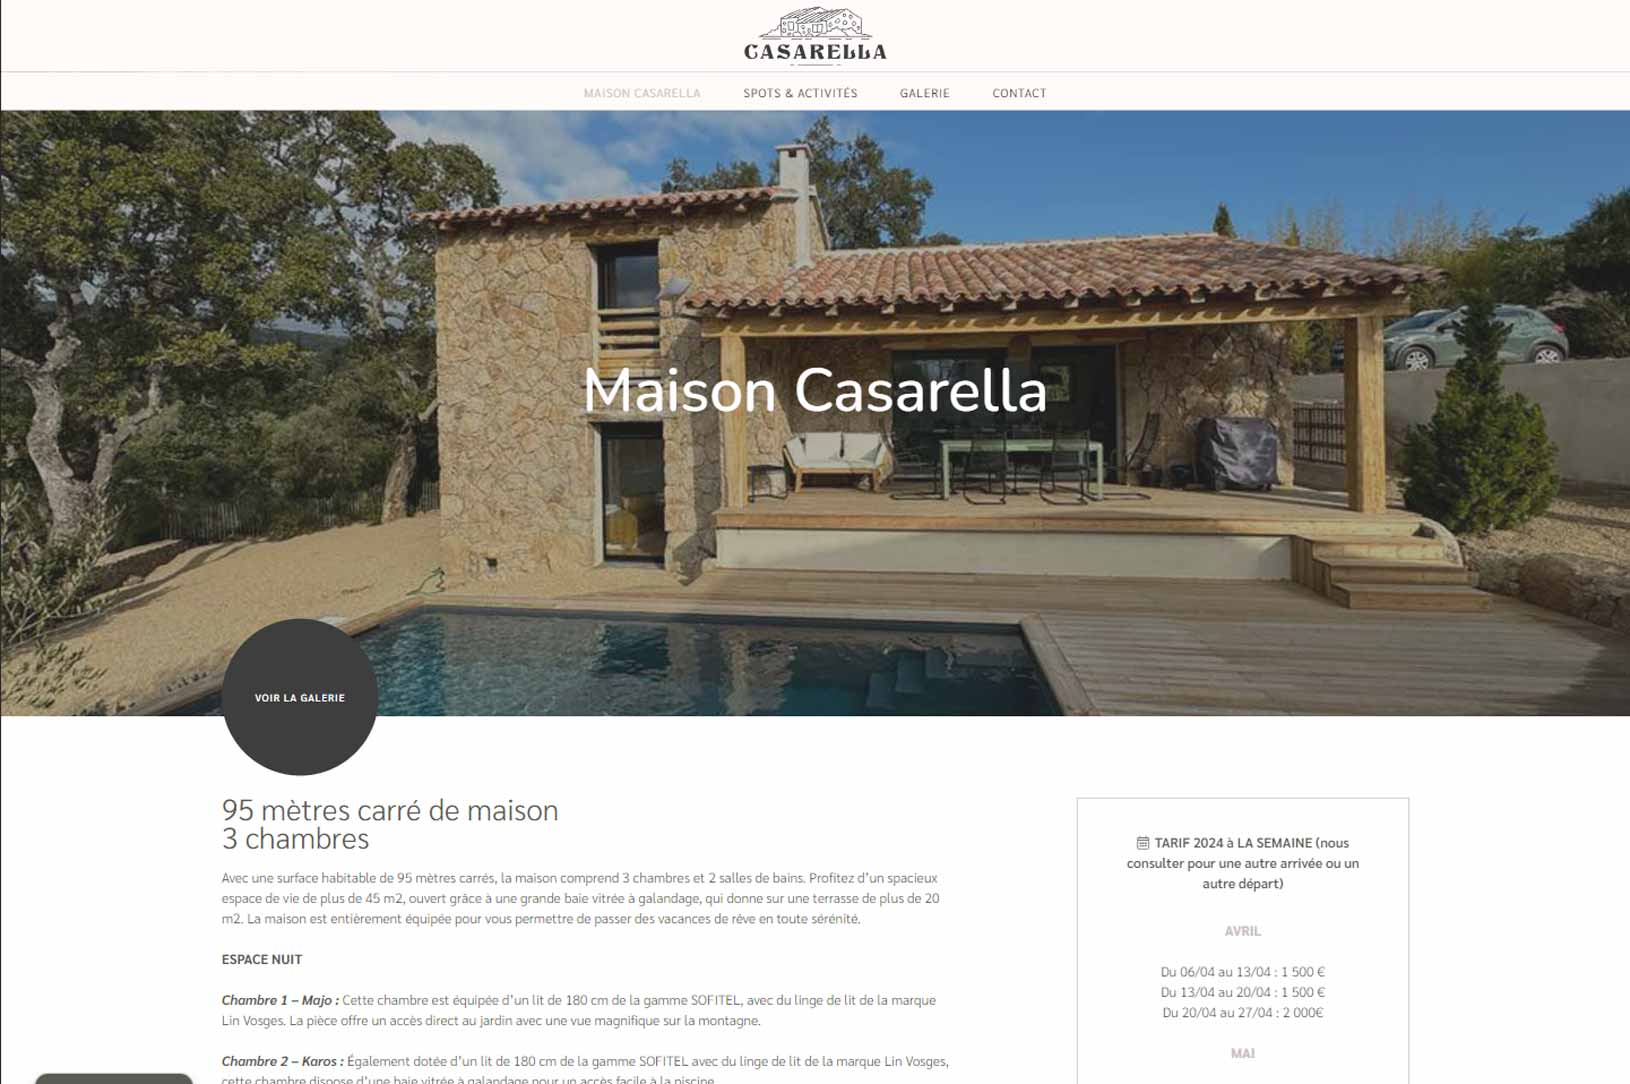 Maison Casarella en Corse